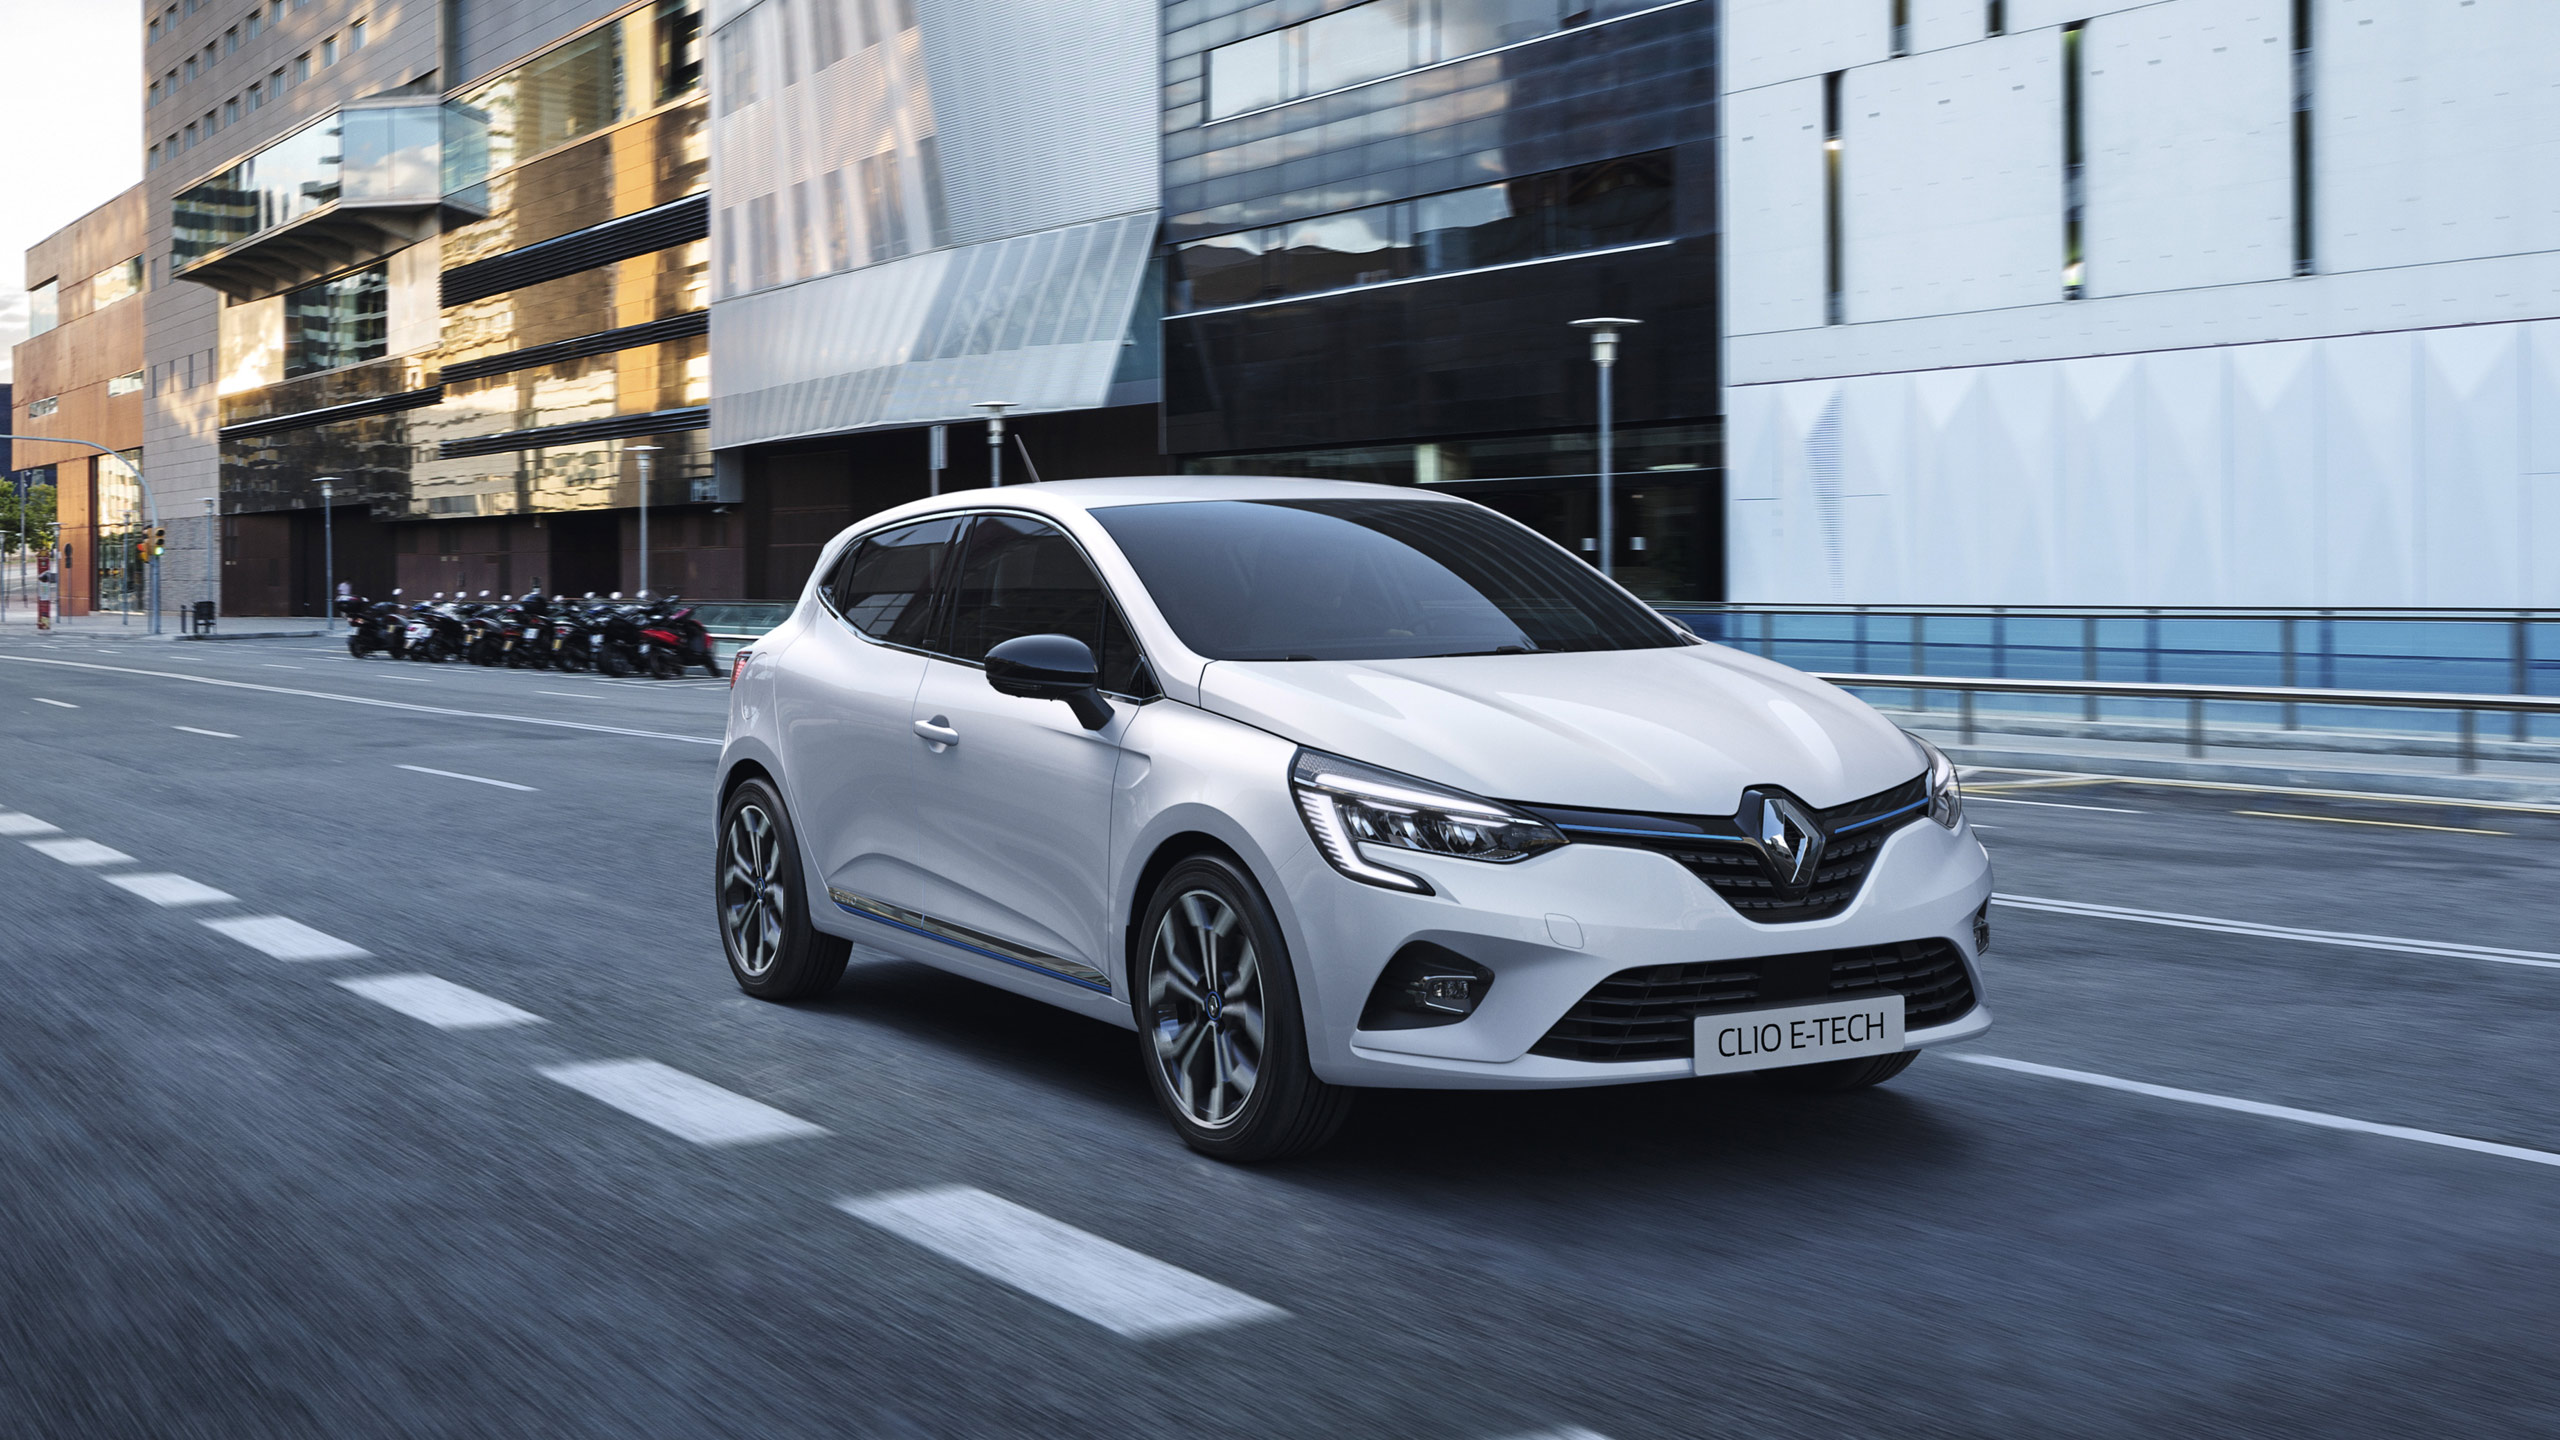 Renault Service-Livre-Nouveau-Véritable toutes Renault Modèles Clio Megane Toutes les voitures et fourgons 